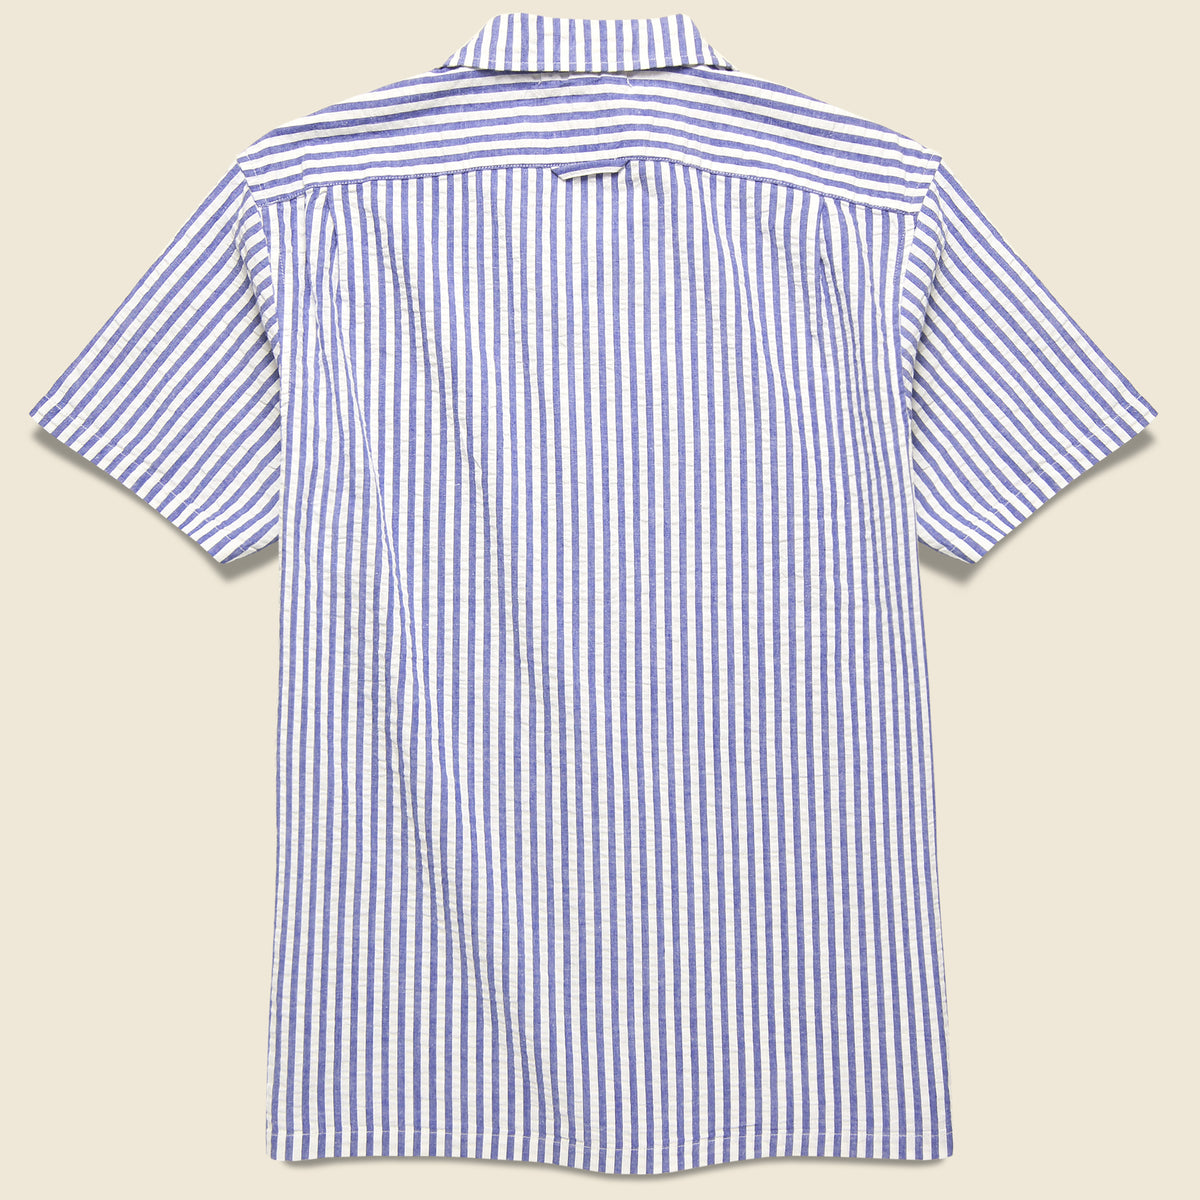 Seersucker Camp Shirt - Blue/White Stripes